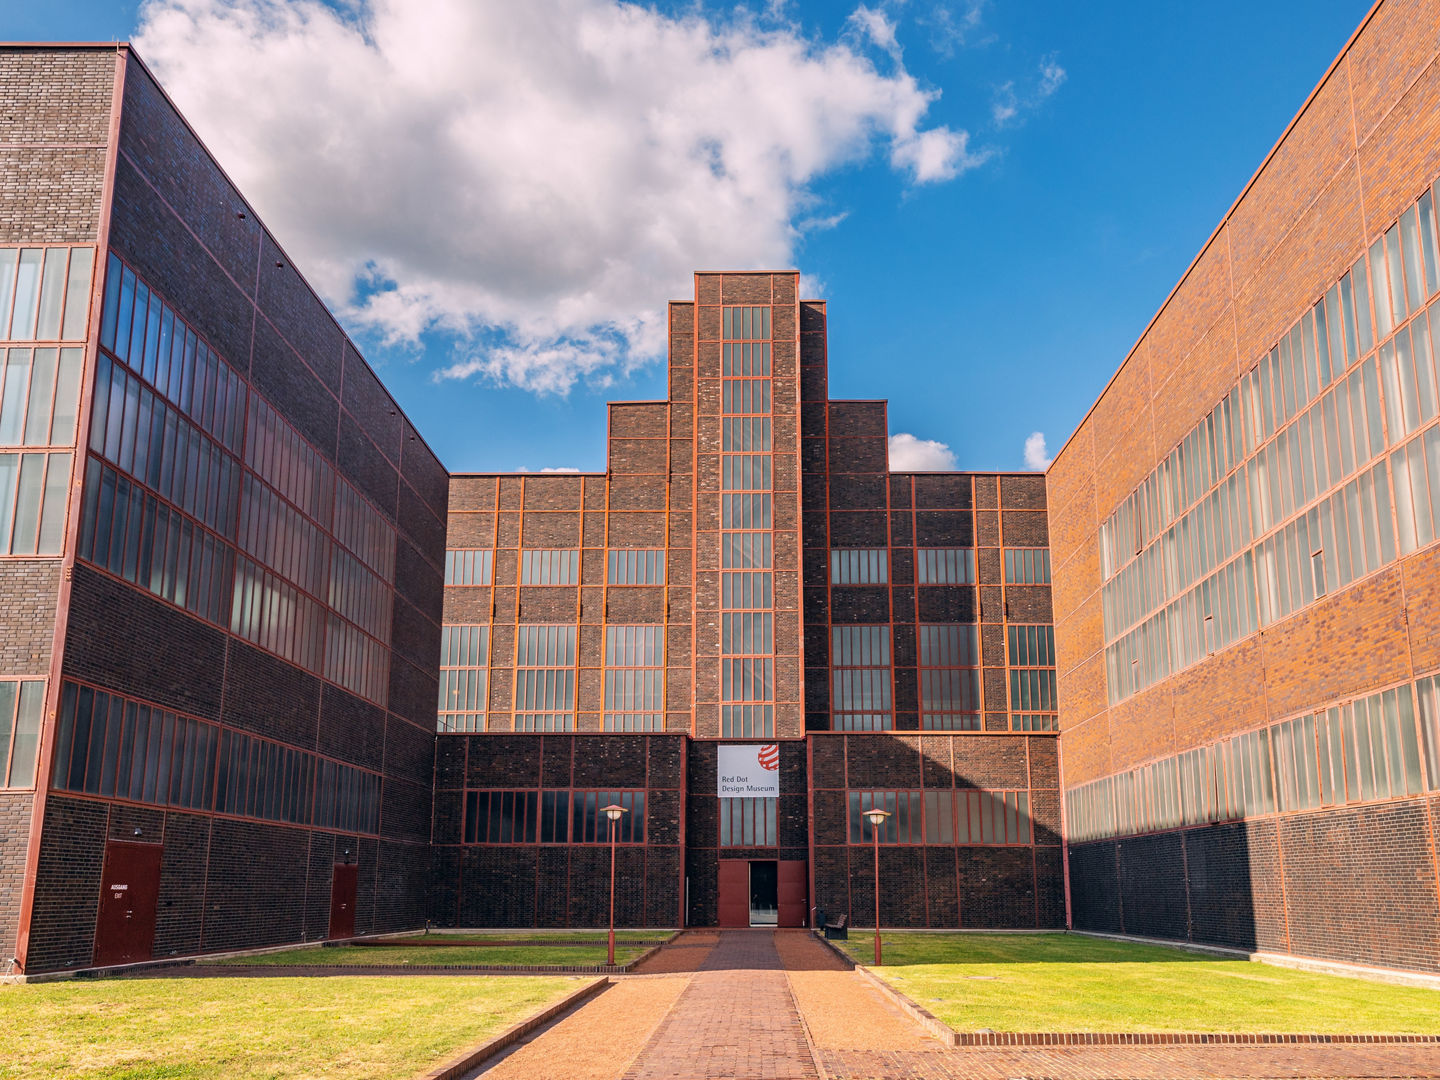 27 July 2022, Essen, Germany: Red Dot Design Museum in Zollverein unesco memorial complex